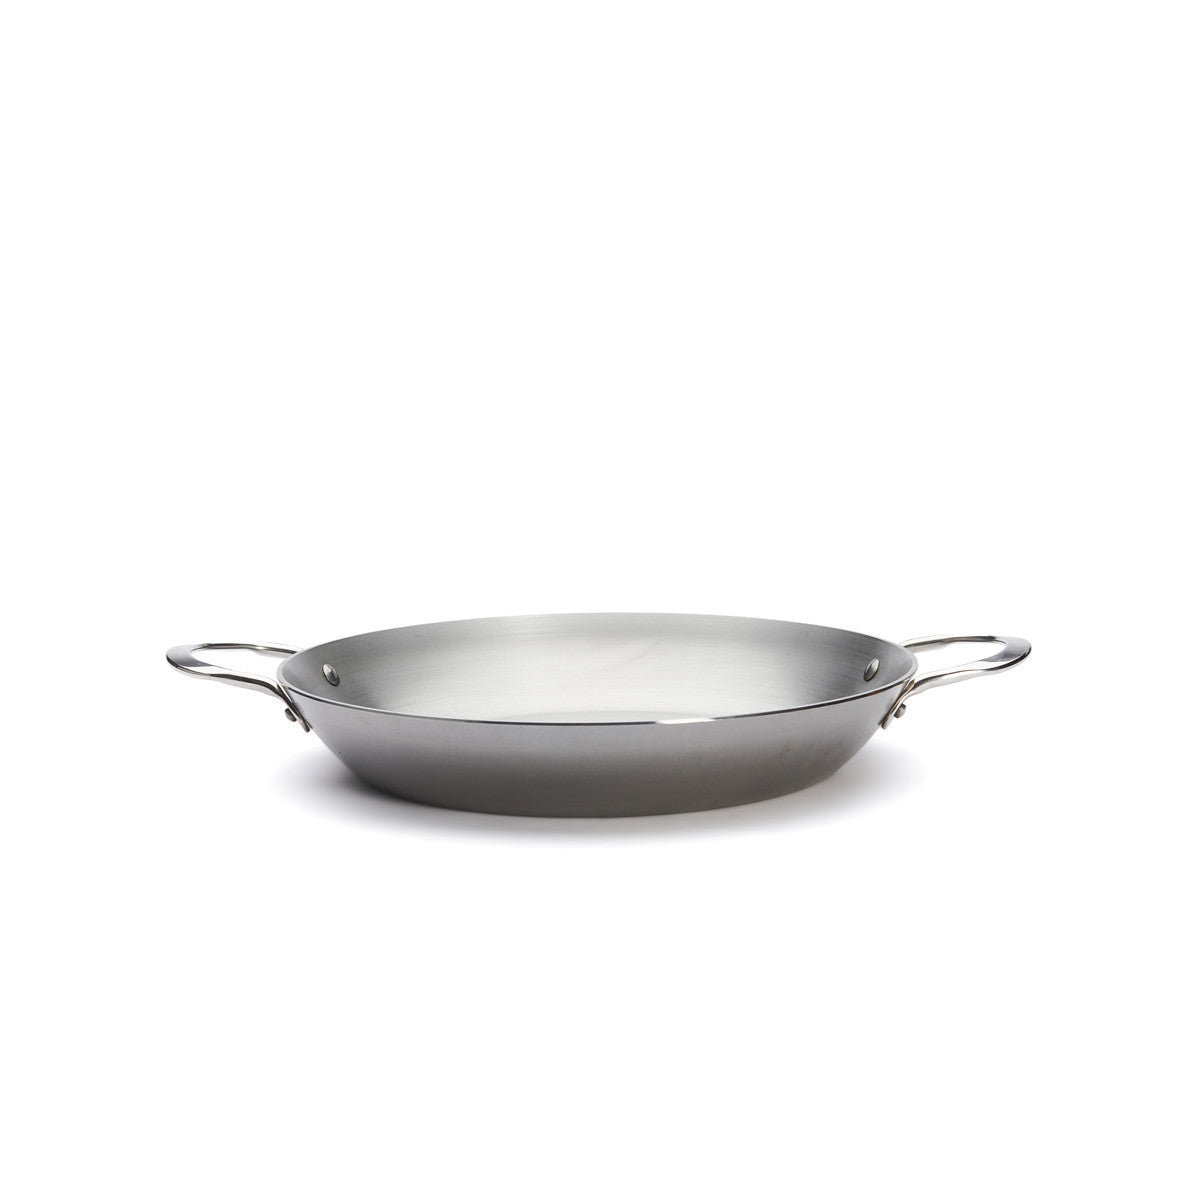 De Buyer Mineral B frying pan, 2 handles